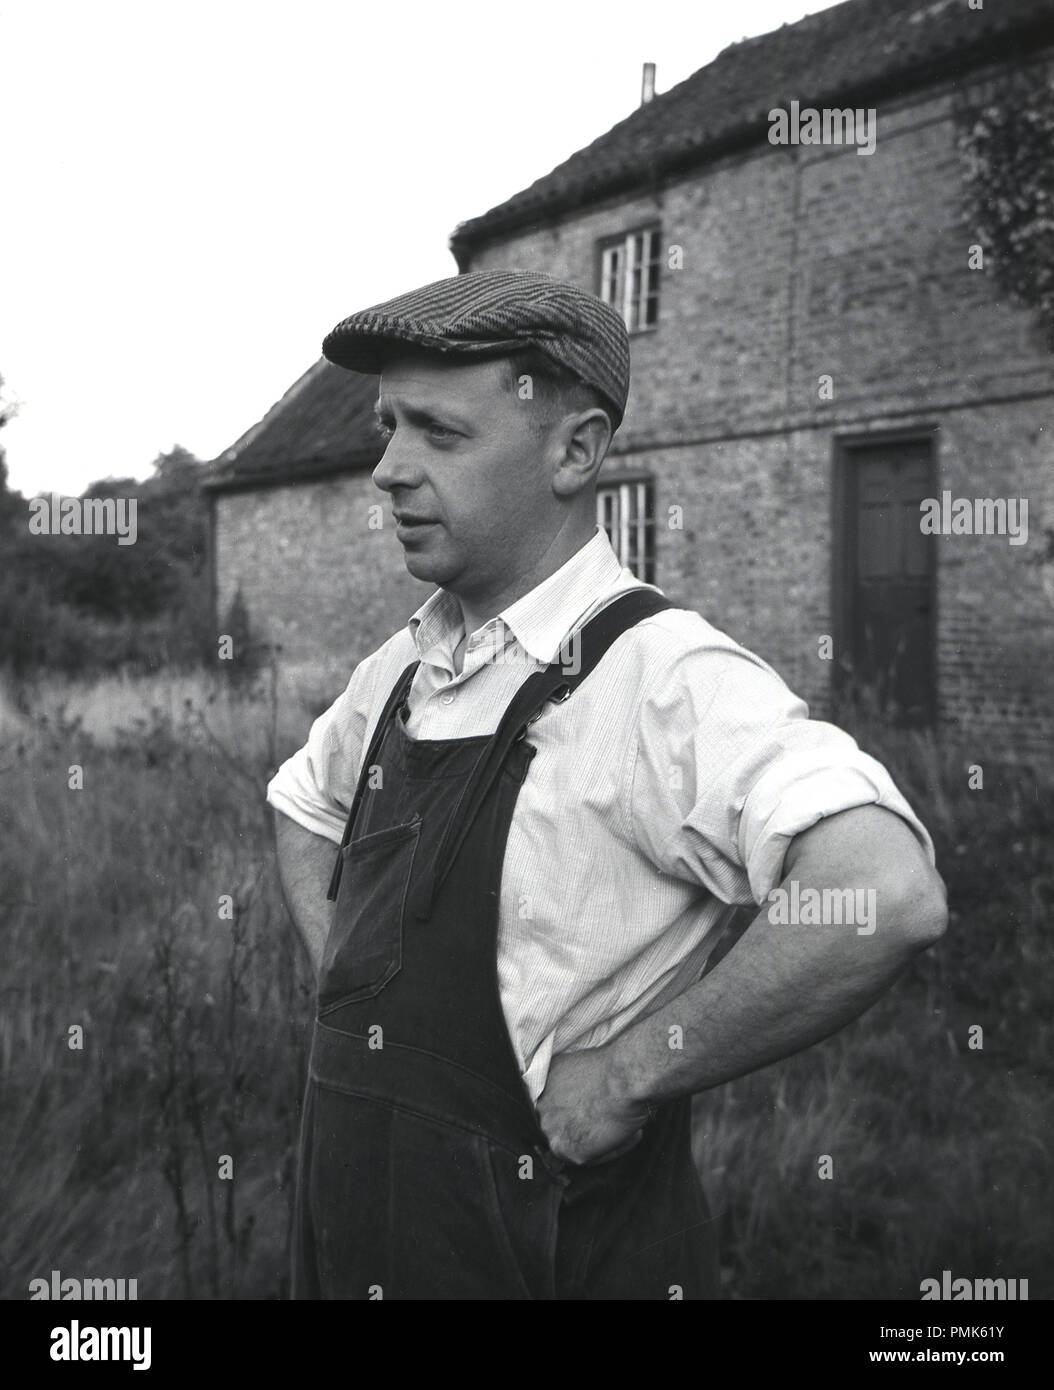 1950, historische, Porträt einer männlichen Immobilien Hausmeister oder Handwerker außerhalb ein Bauernhof, seine Arbeitskleidung, Hemd mit Kragen, dunagarees und flache Kappe tragen, England, UK. Stockfoto